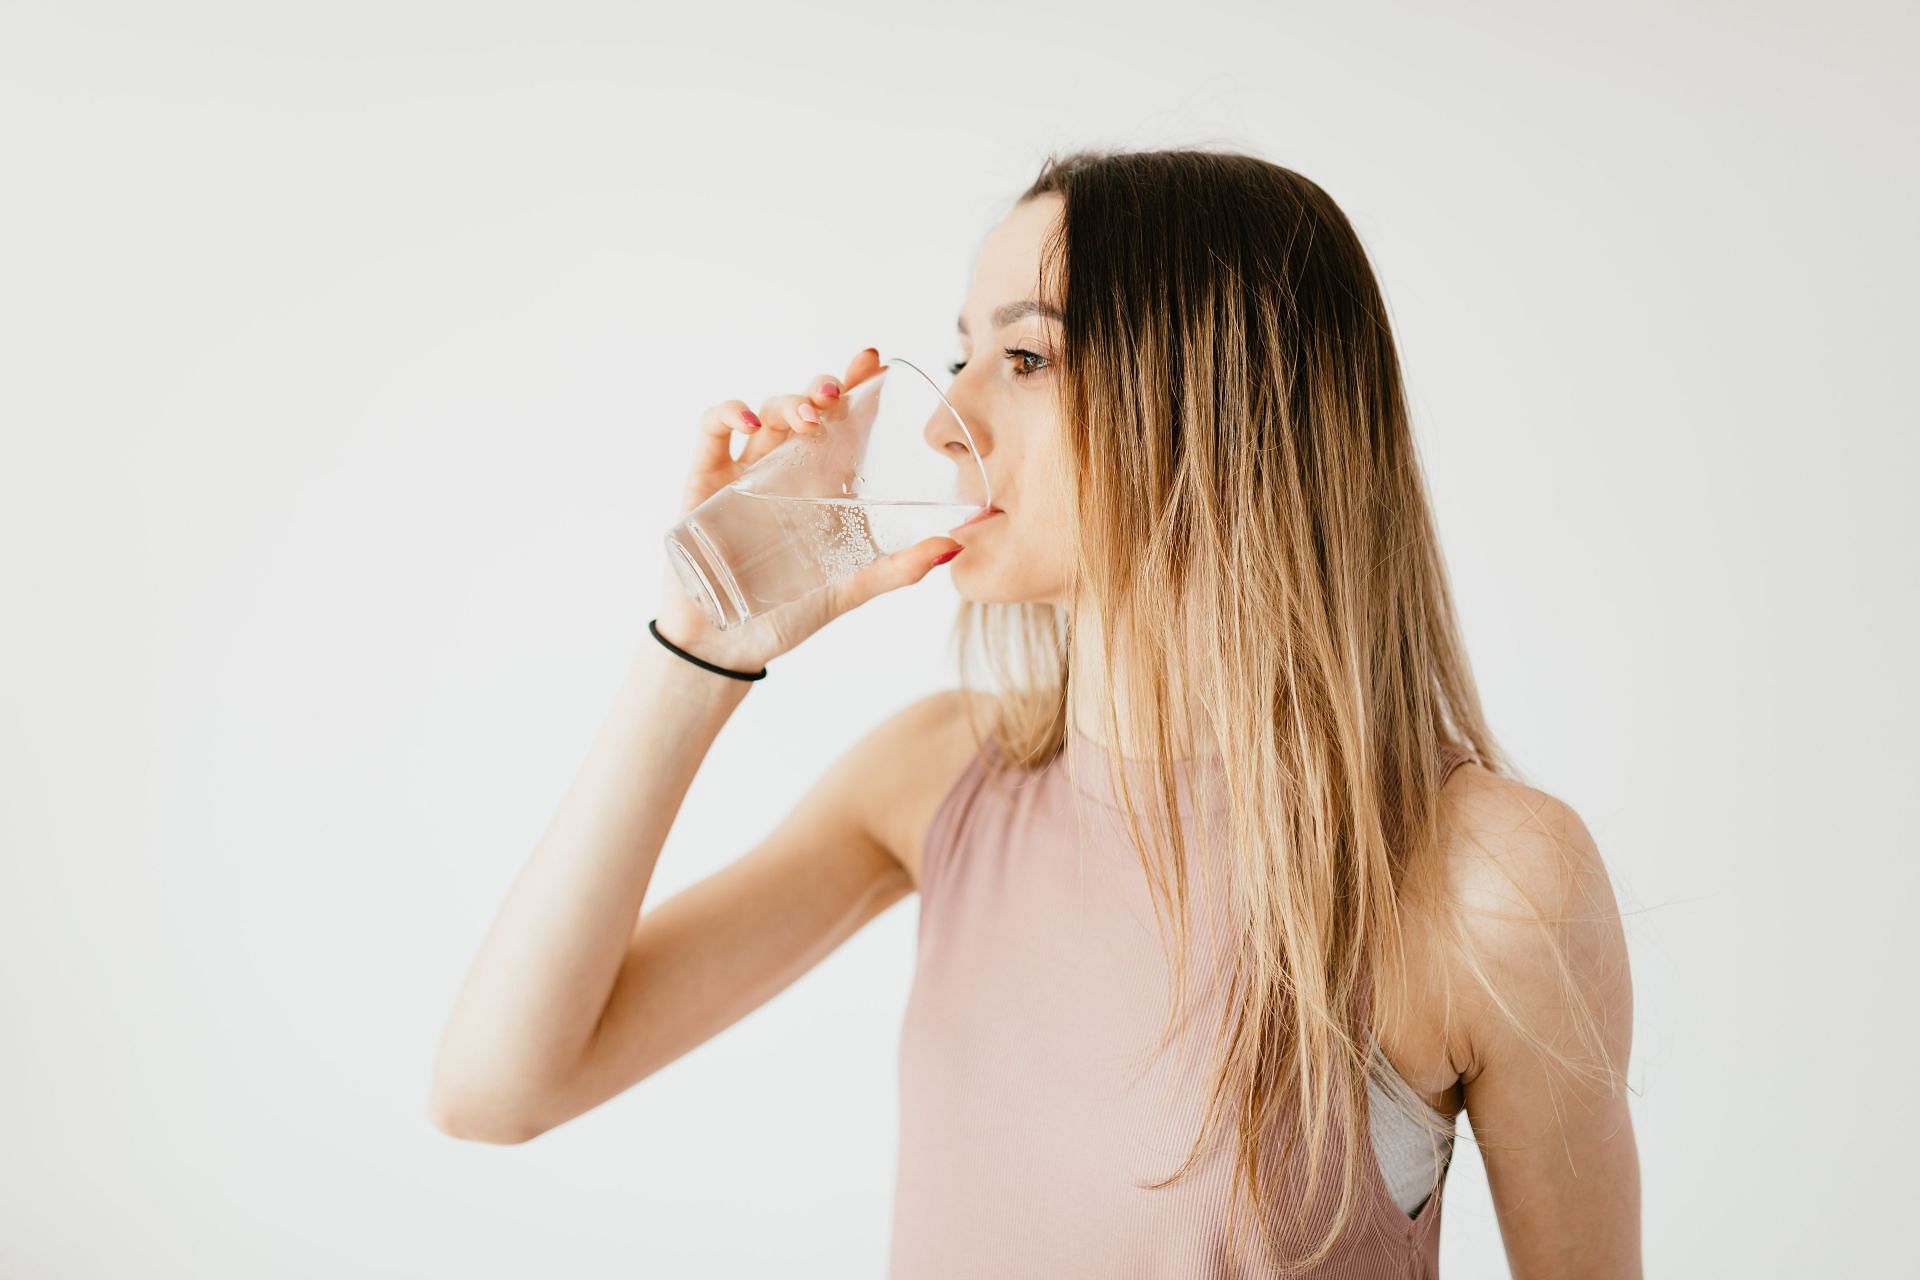 Drink more water and keep yourself hydrated. (Image via Pexels / karolina Grabowska)